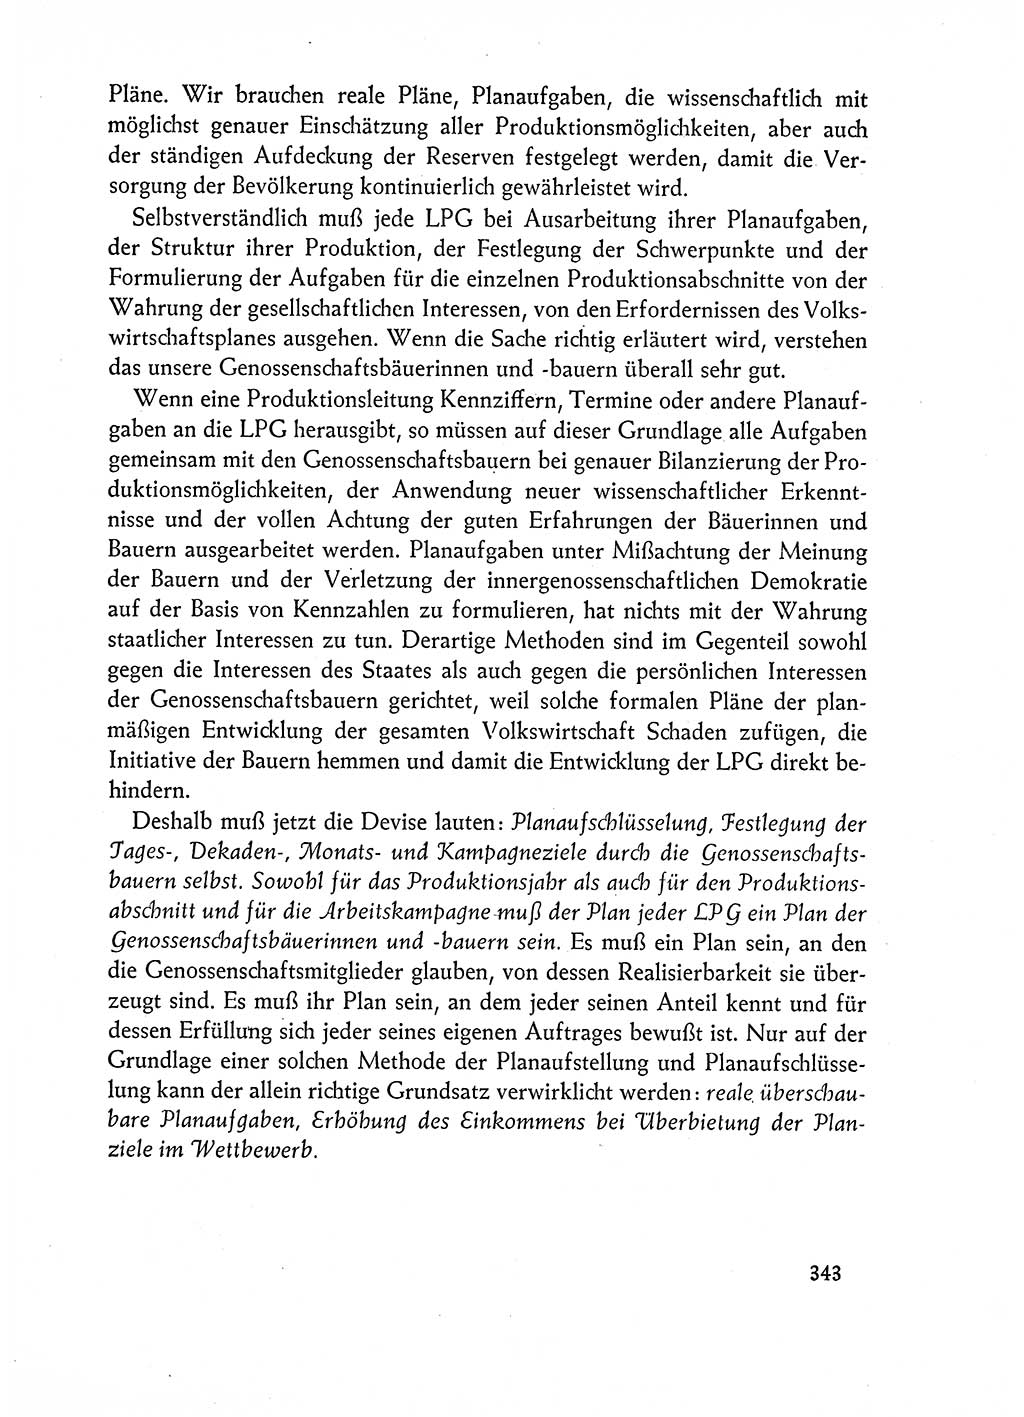 Dokumente der Sozialistischen Einheitspartei Deutschlands (SED) [Deutsche Demokratische Republik (DDR)] 1962-1963, Seite 343 (Dok. SED DDR 1962-1963, S. 343)